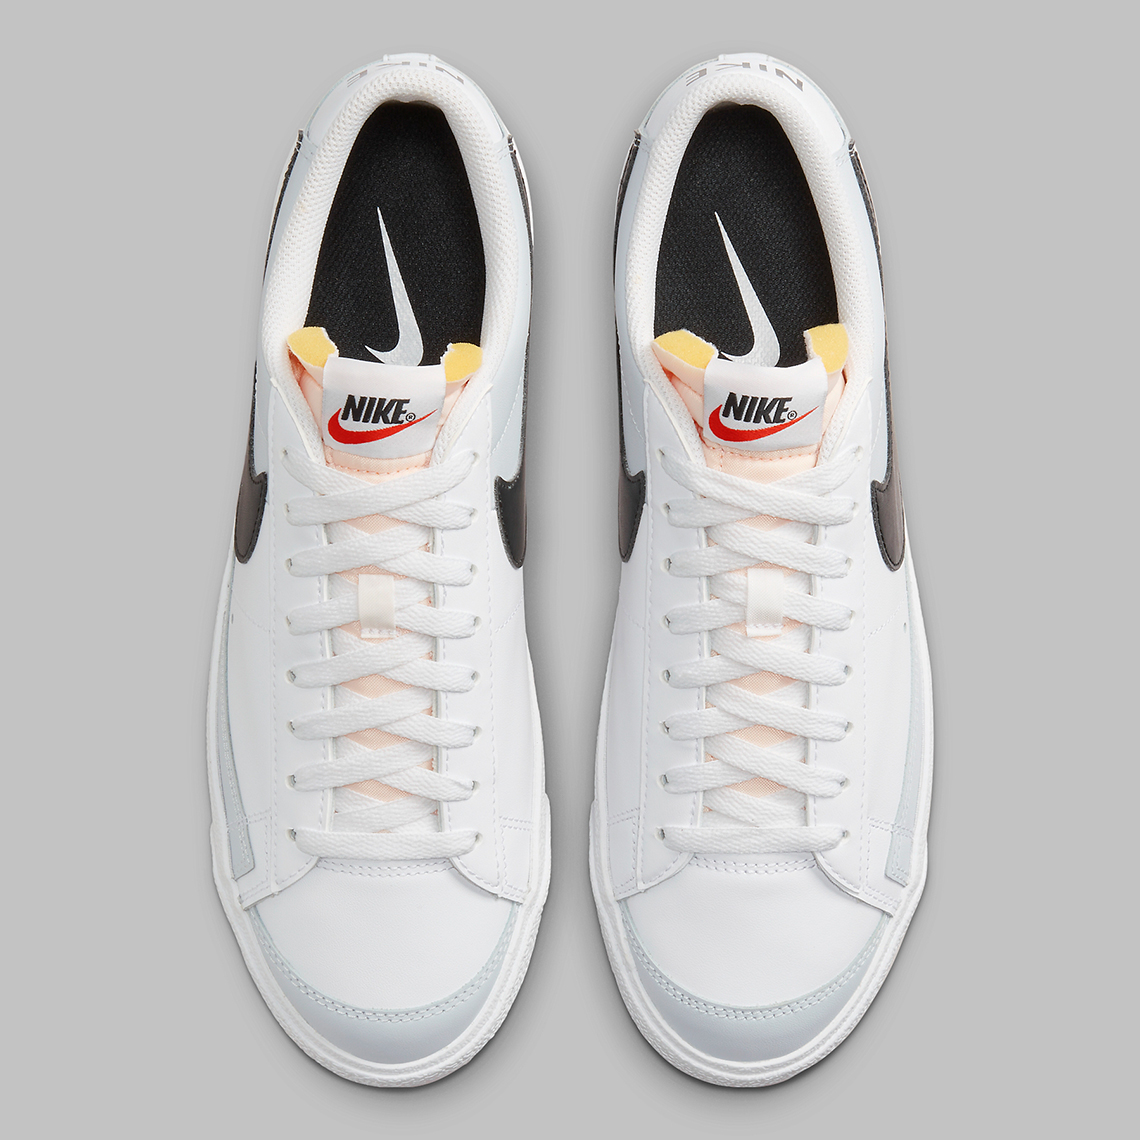 Nike Blazer Low “Grey/Black” DZ3480-100 | SneakerNews.com